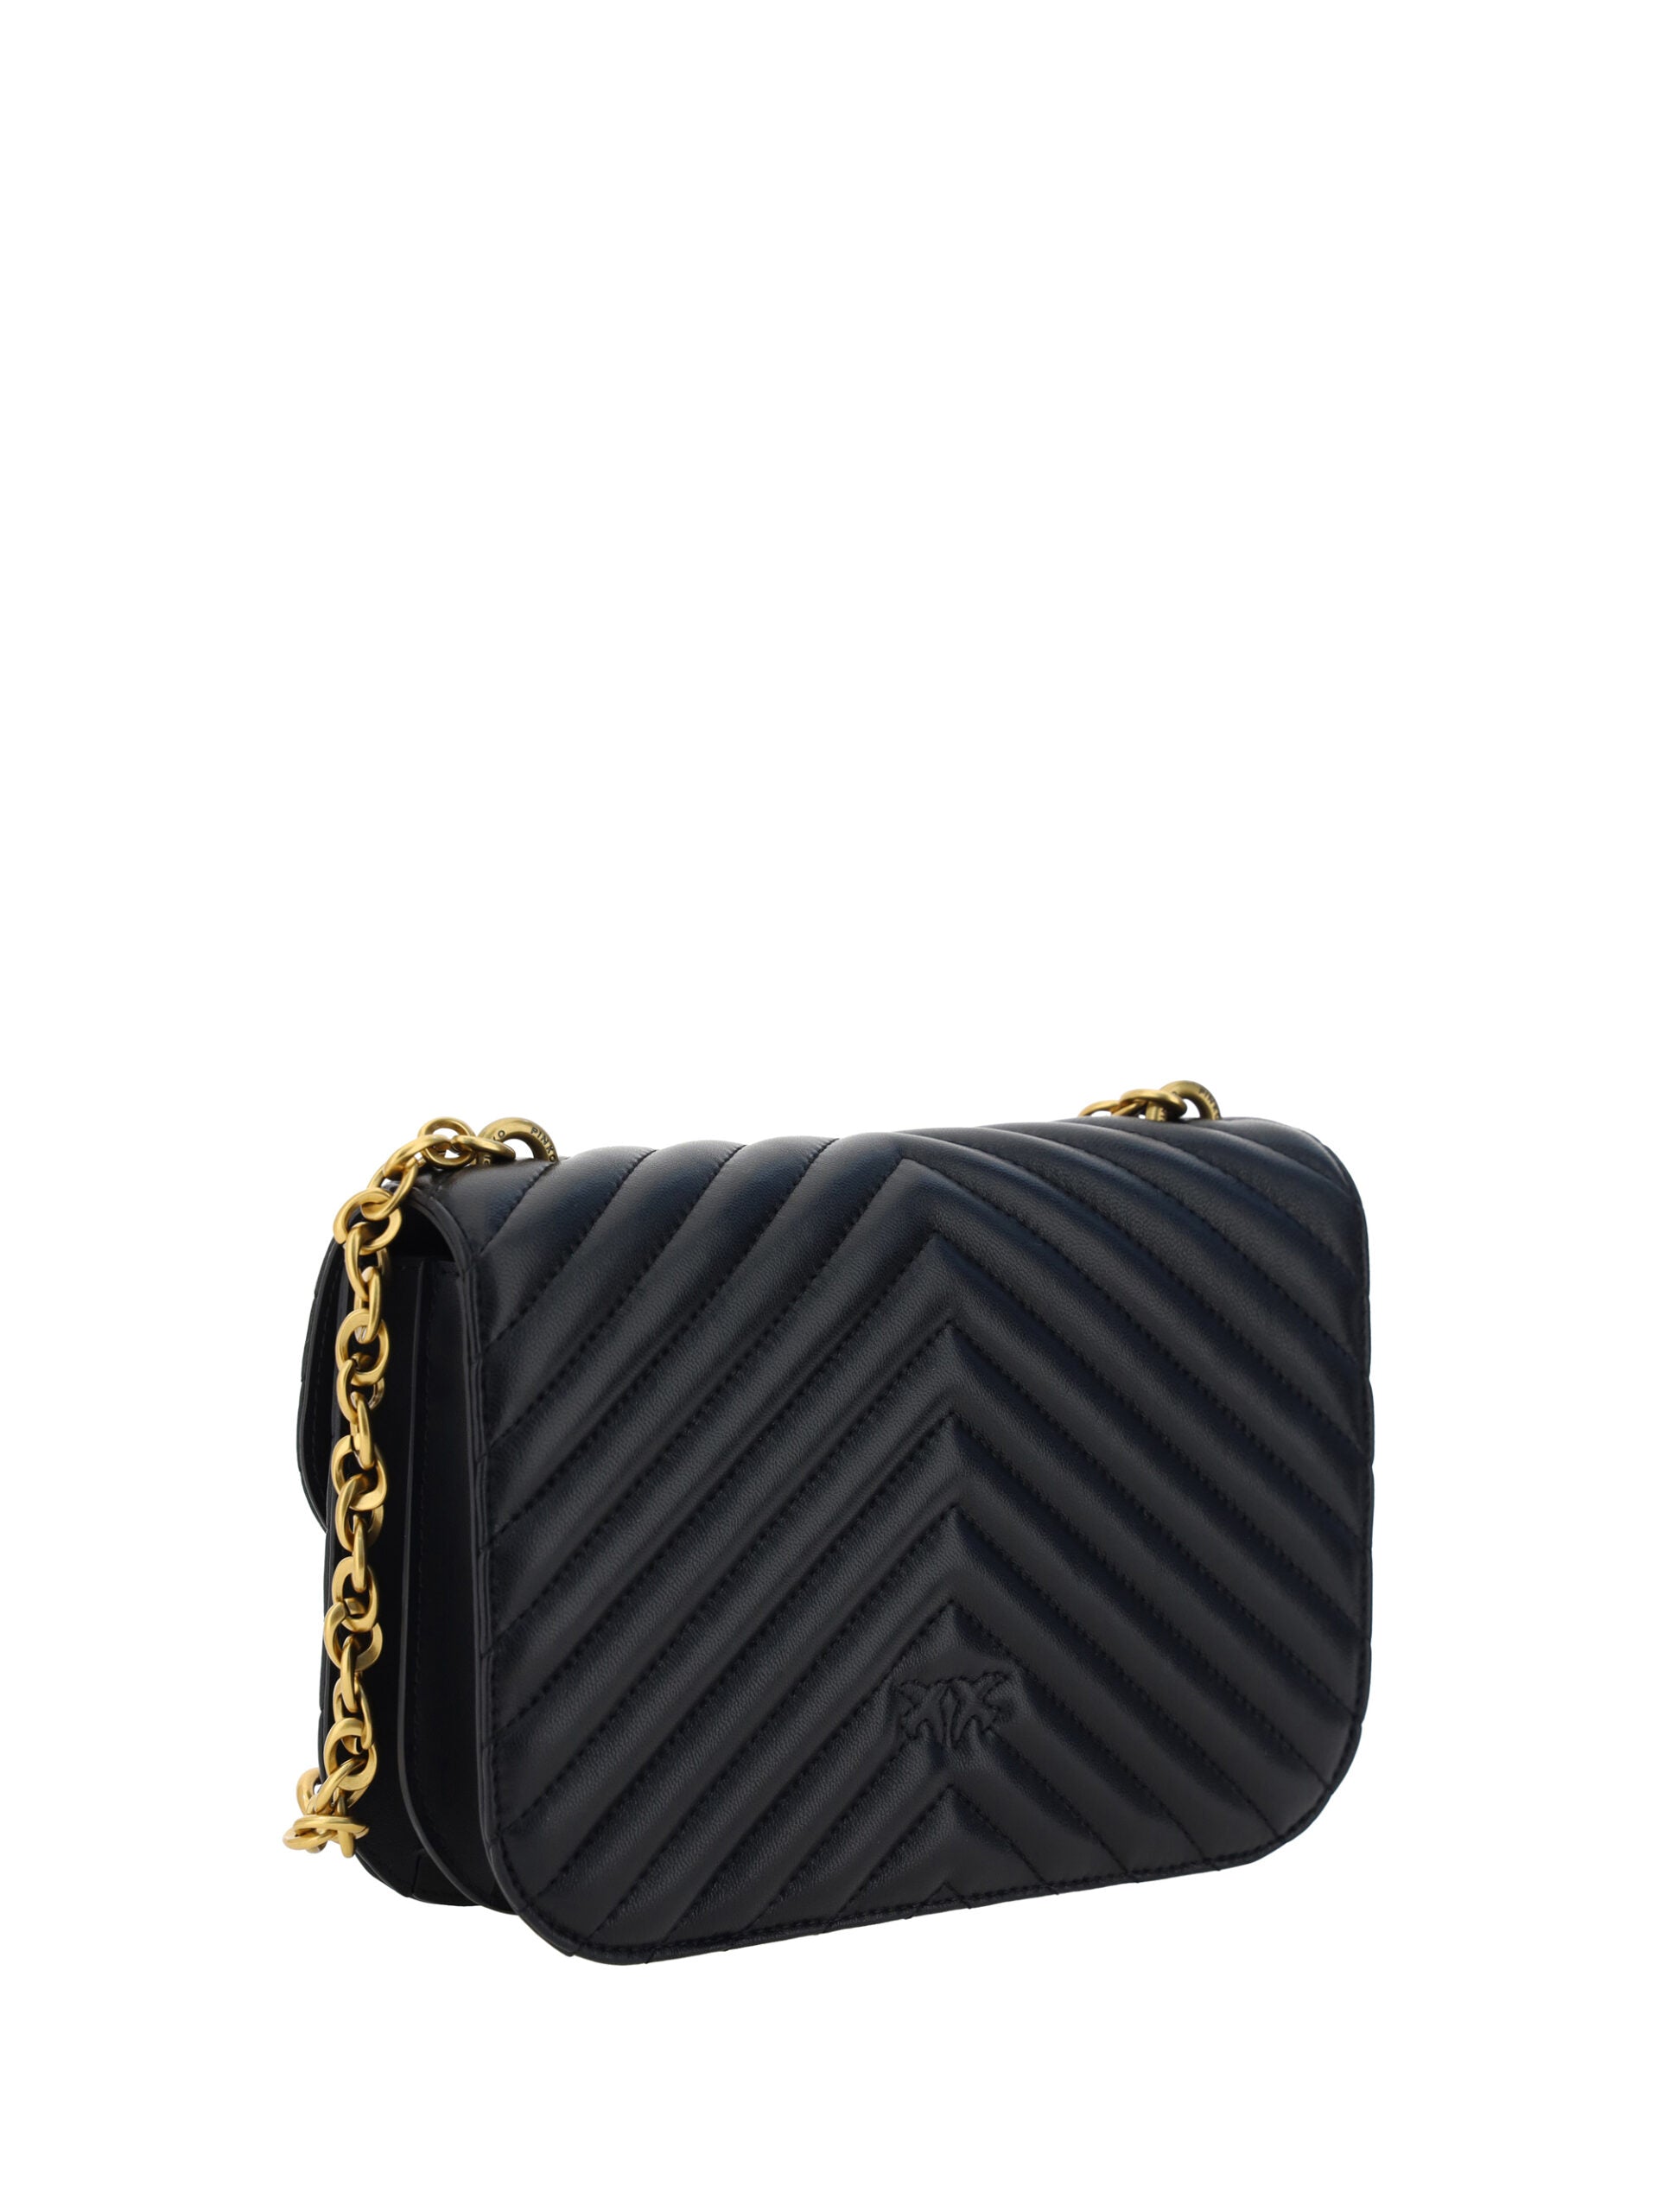 PINKO Elegant Black Quilted Leather Shoulder Bag